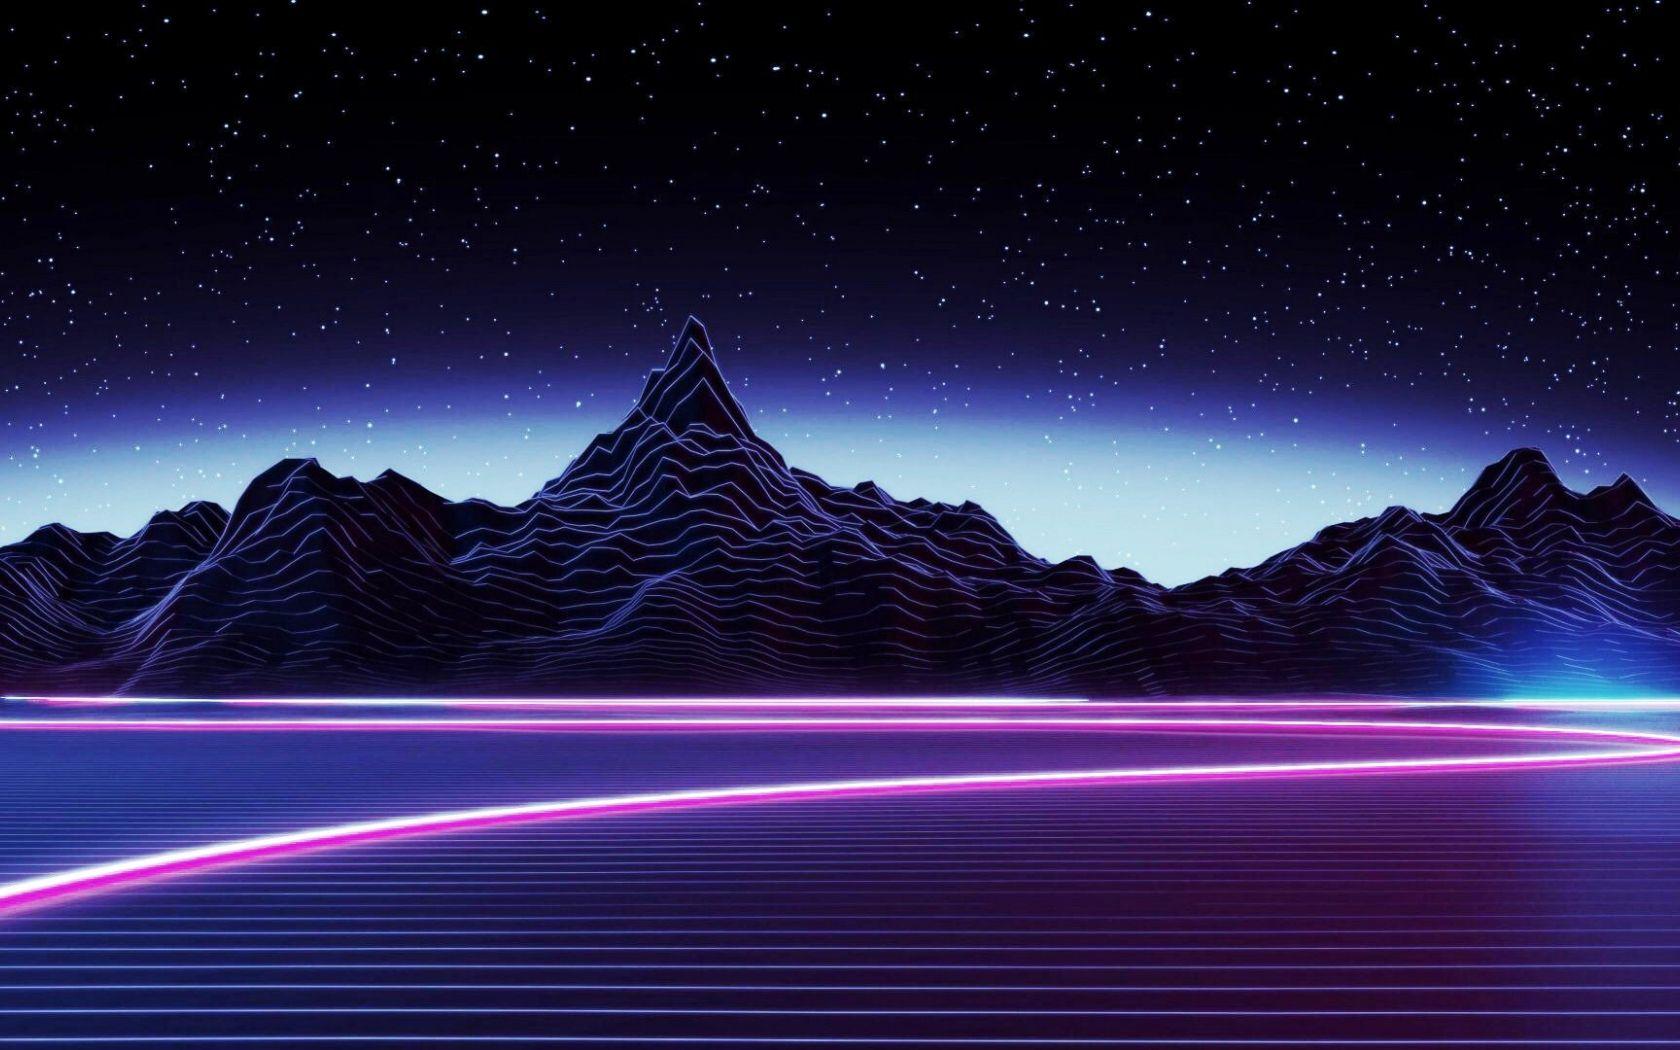 Những bức hình Neon Purple Mountain Wallpapers là sự kết hợp tuyệt vời giữa cảnh quan và sắc màu đầy sáng tạo. Bức ảnh này sẽ mang đến cho bạn một trải nghiệm tuyệt vời với những cung đường đầy bí ẩn và sự kết hợp hoàn hảo của ánh sáng và màu sắc. Hãy cùng trải nghiệm với hình ảnh Neon Purple Mountain Wallpapers!